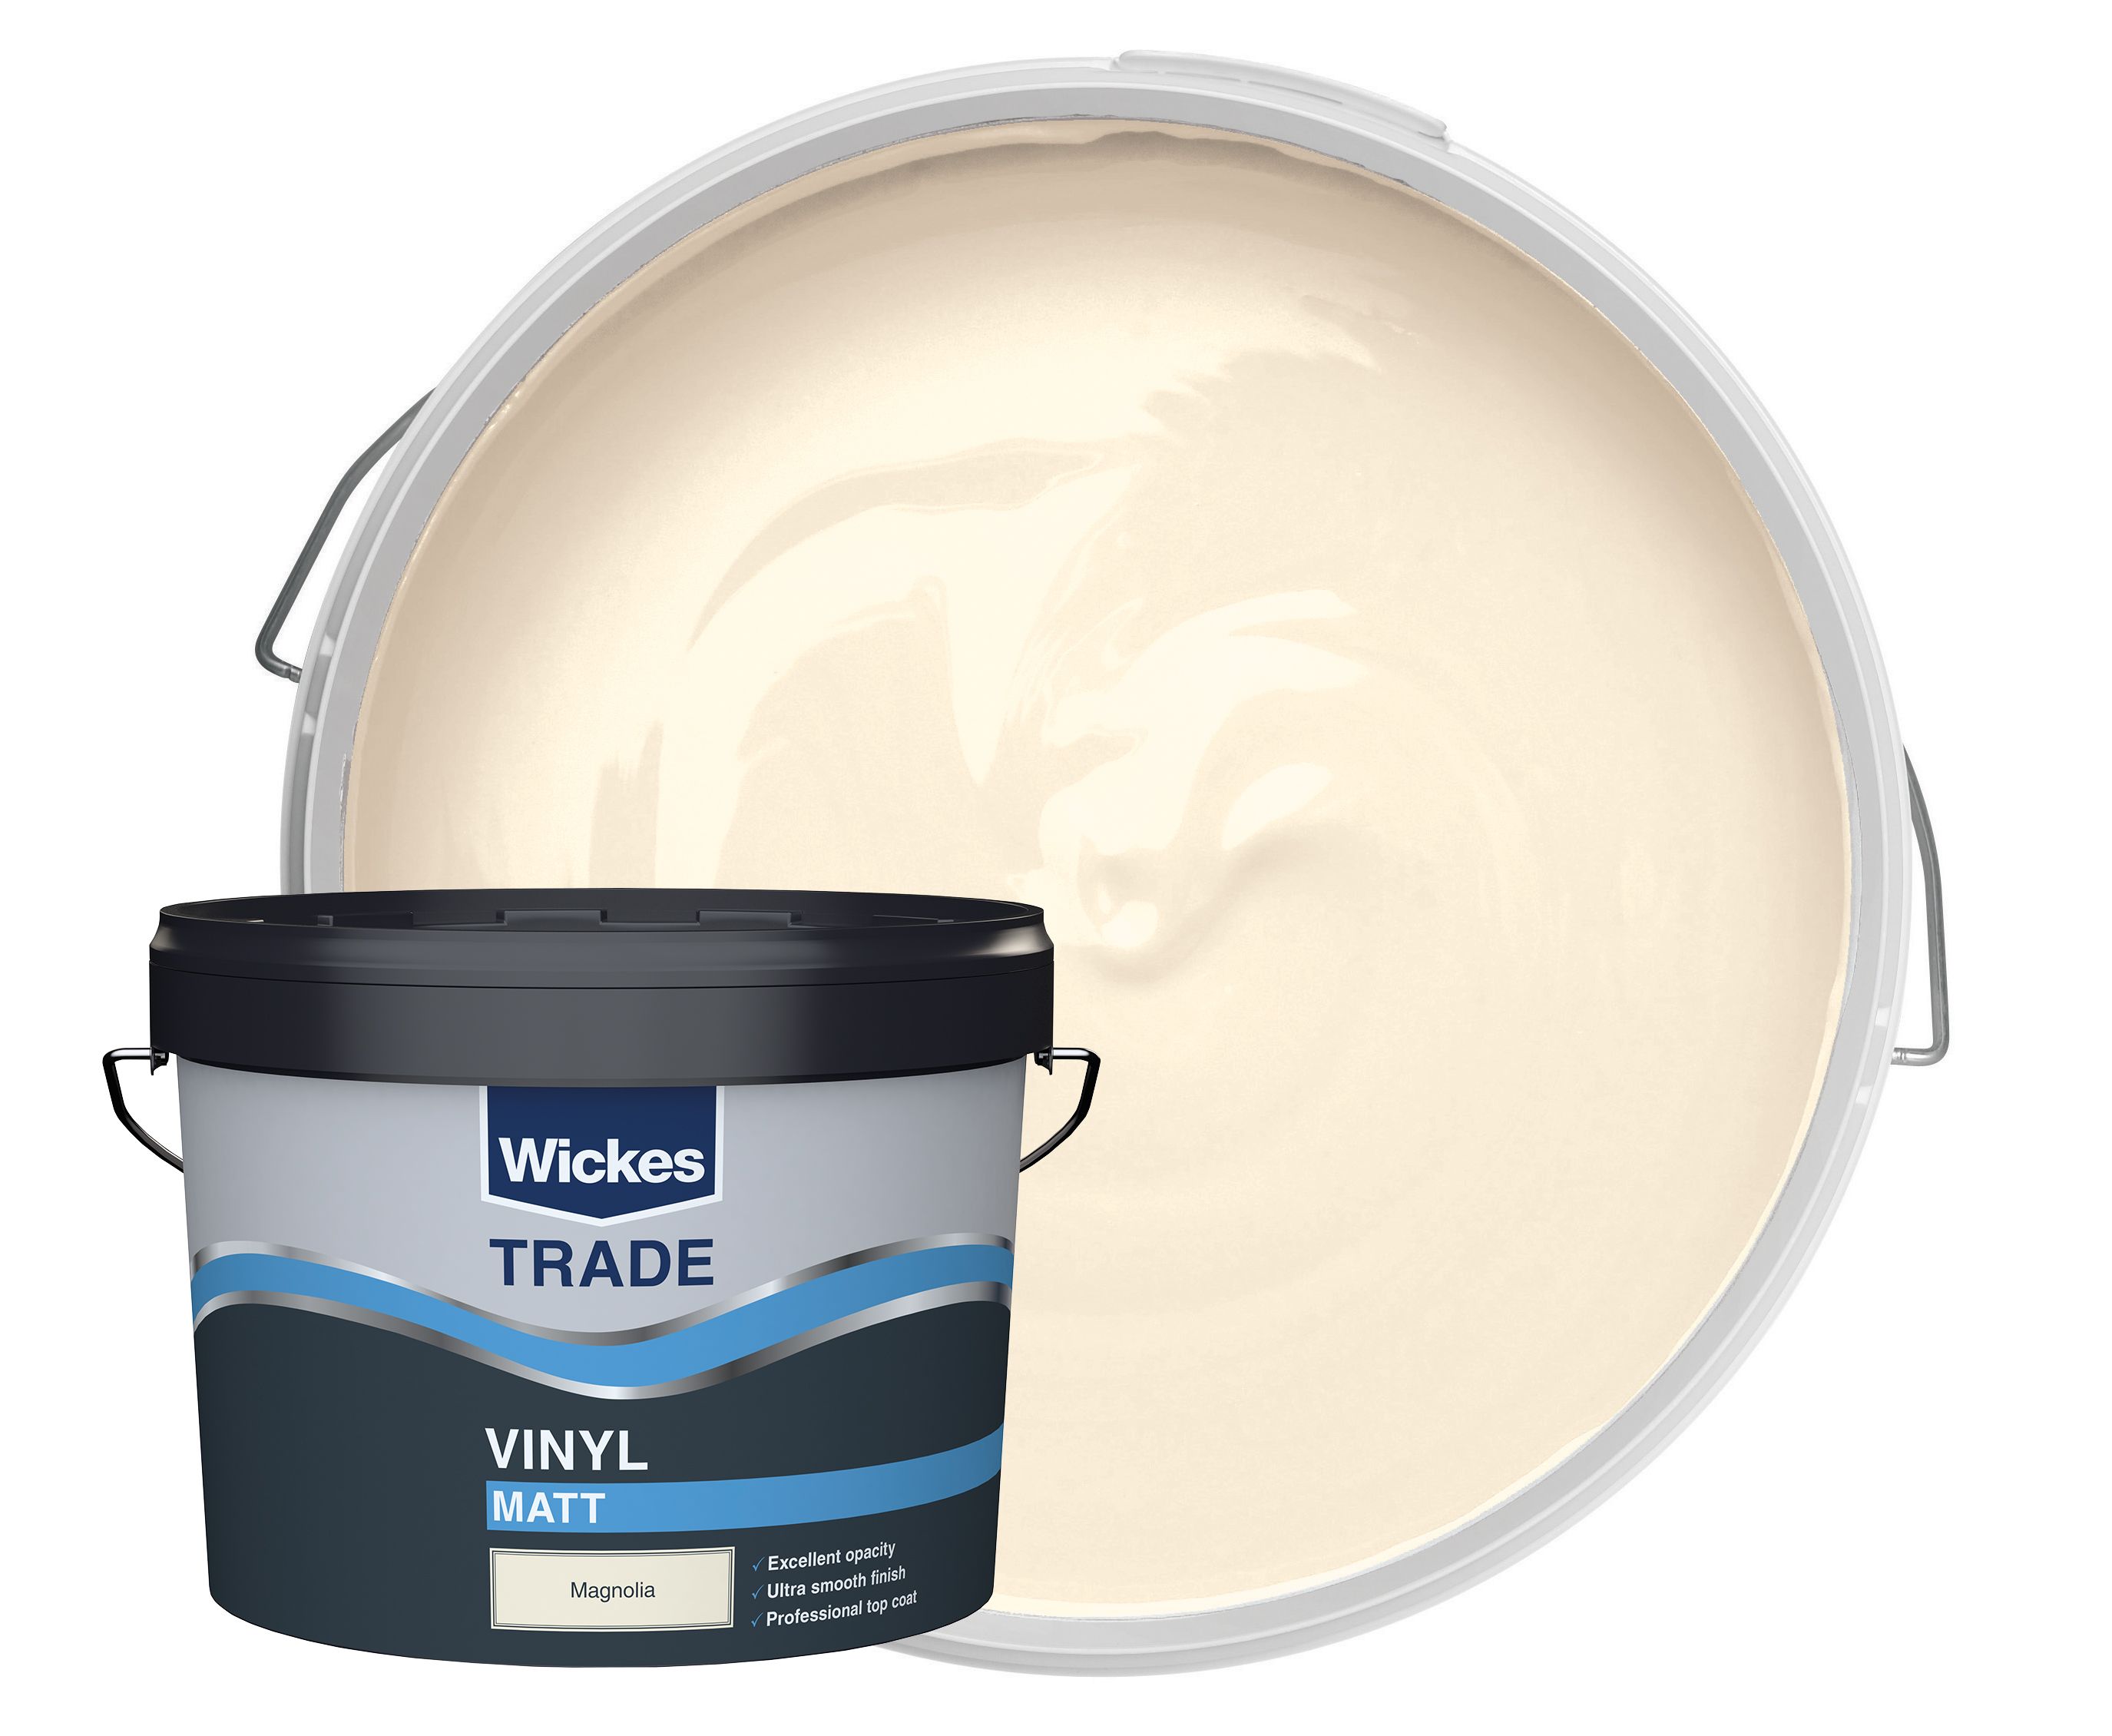 Wickes Trade Vinyl Matt Emulsion Paint - Magnolia 10L